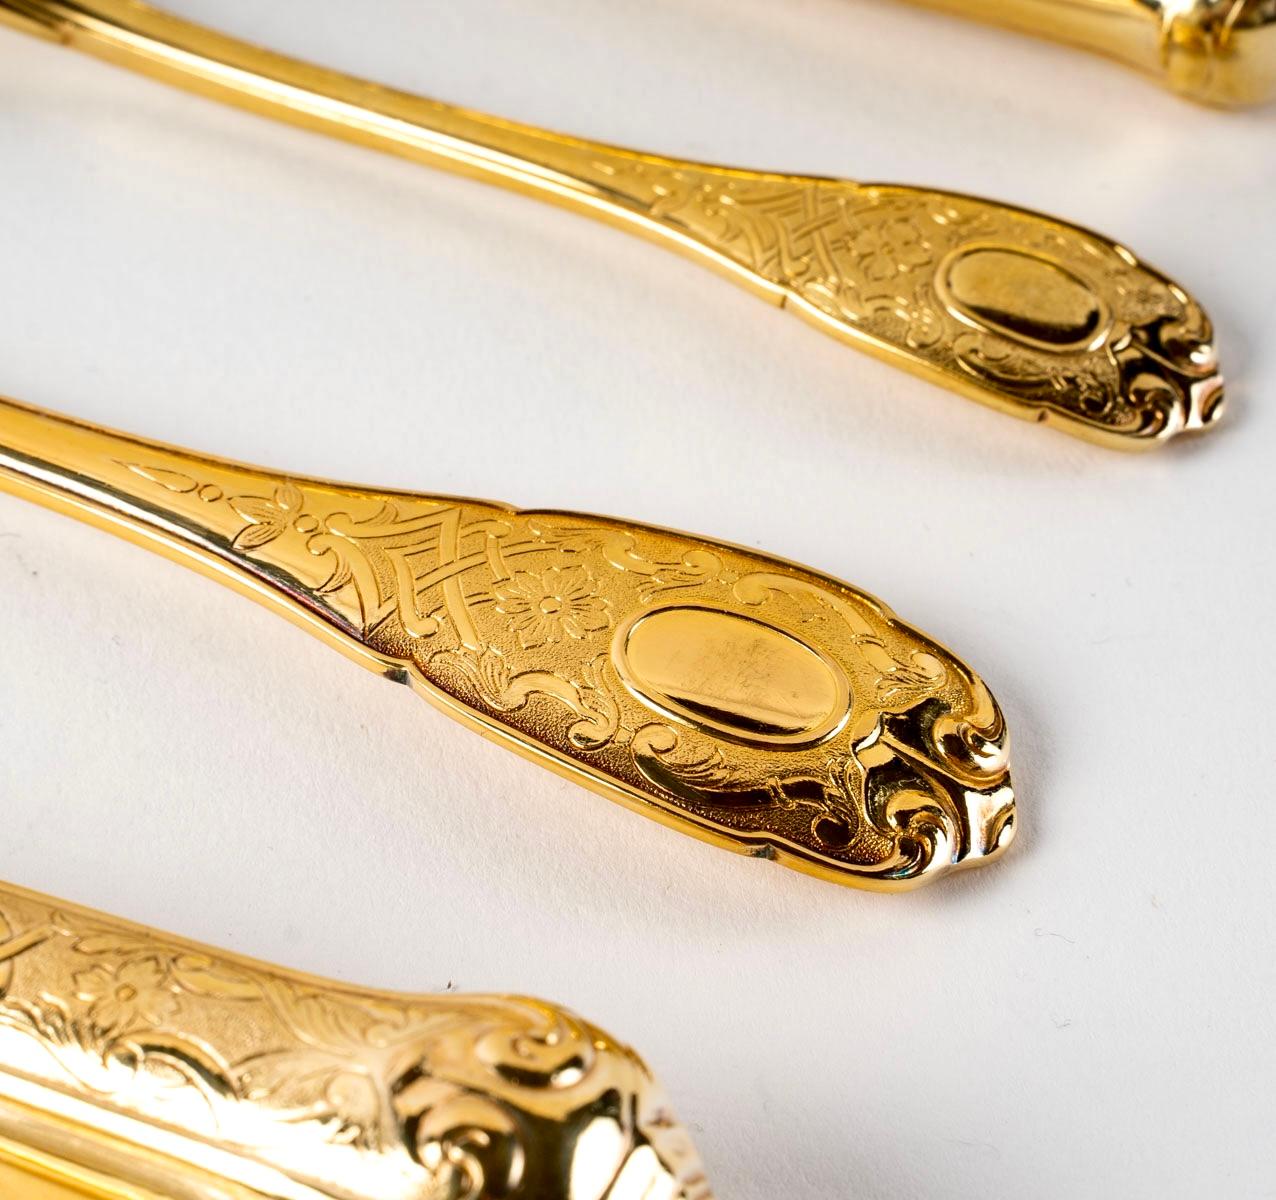 Puiforcat, Elysée Vermeil Gold Sterling Silver Flatware Cutlery Set, 70 Pieces 1